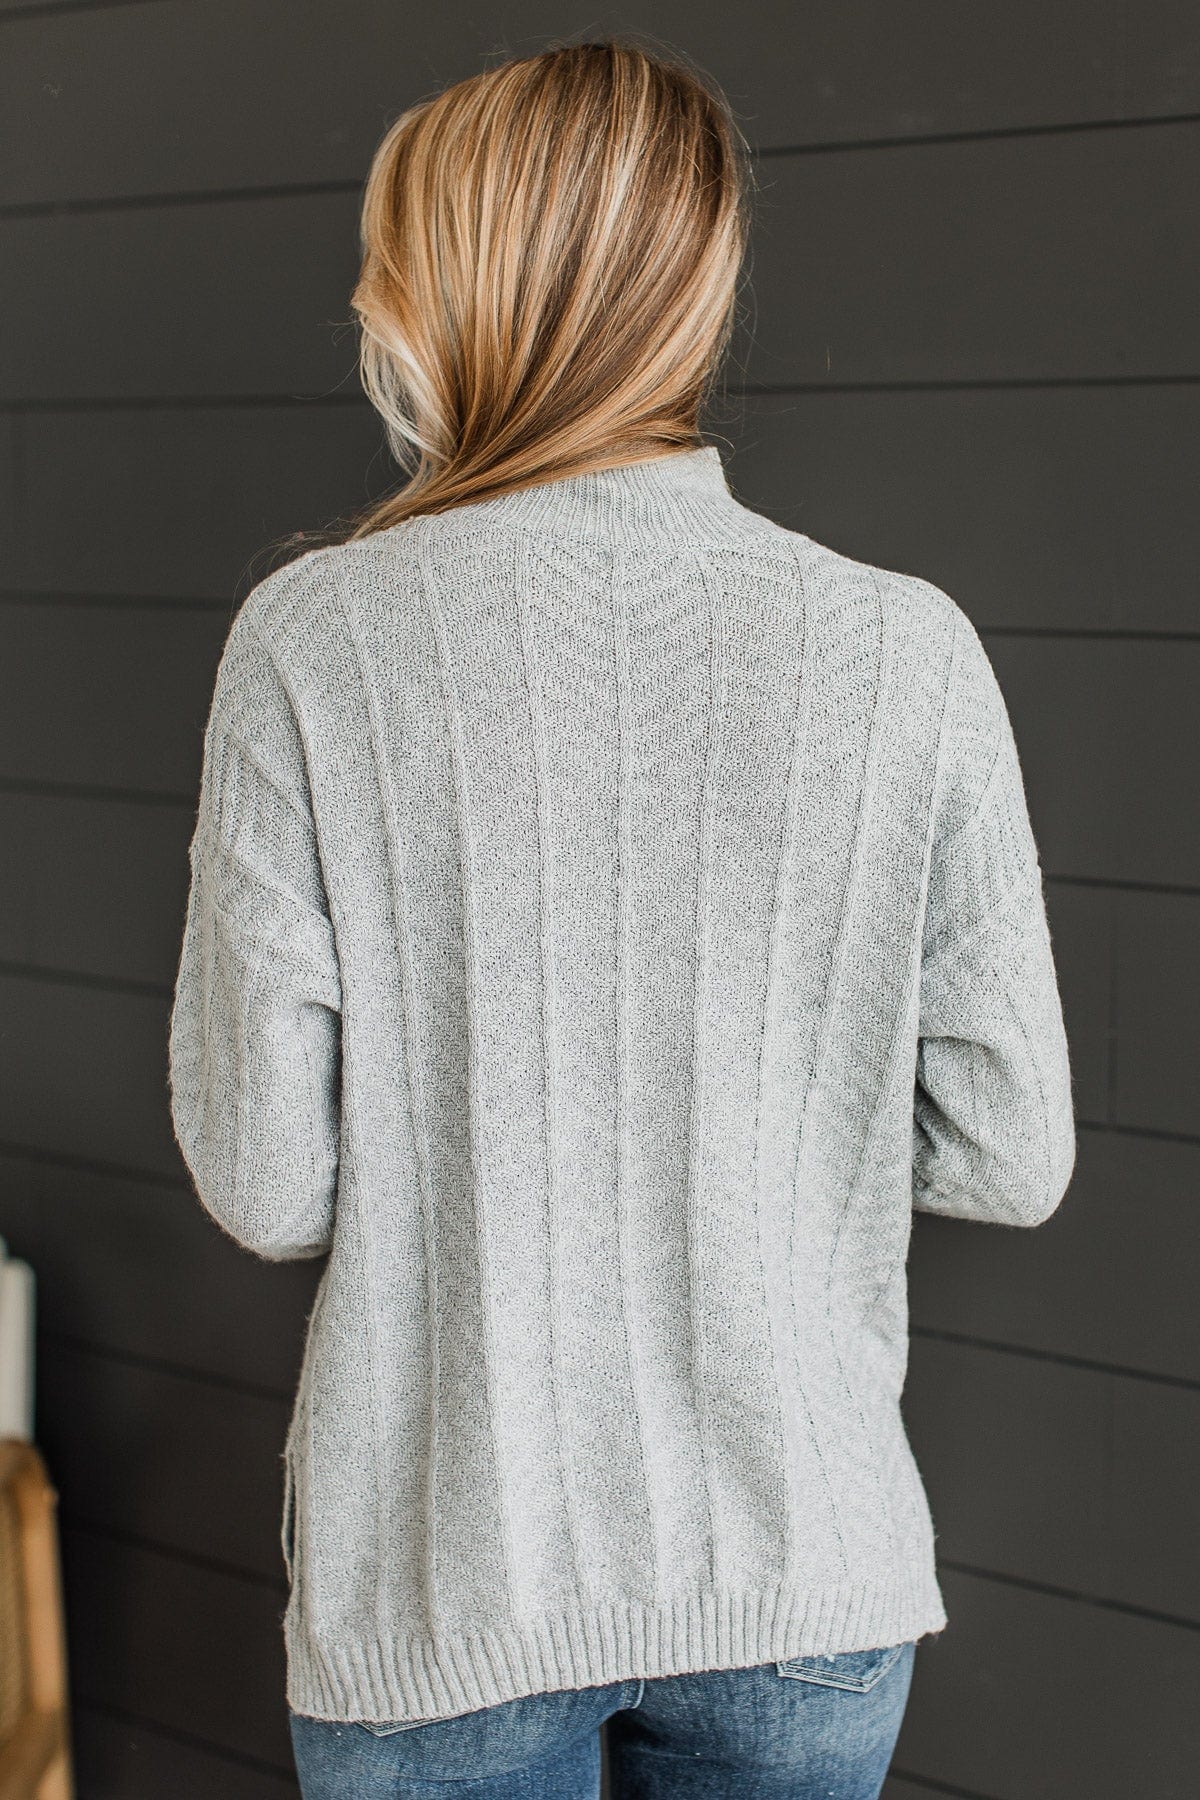 Already Spoken For Knit Sweater- Grey